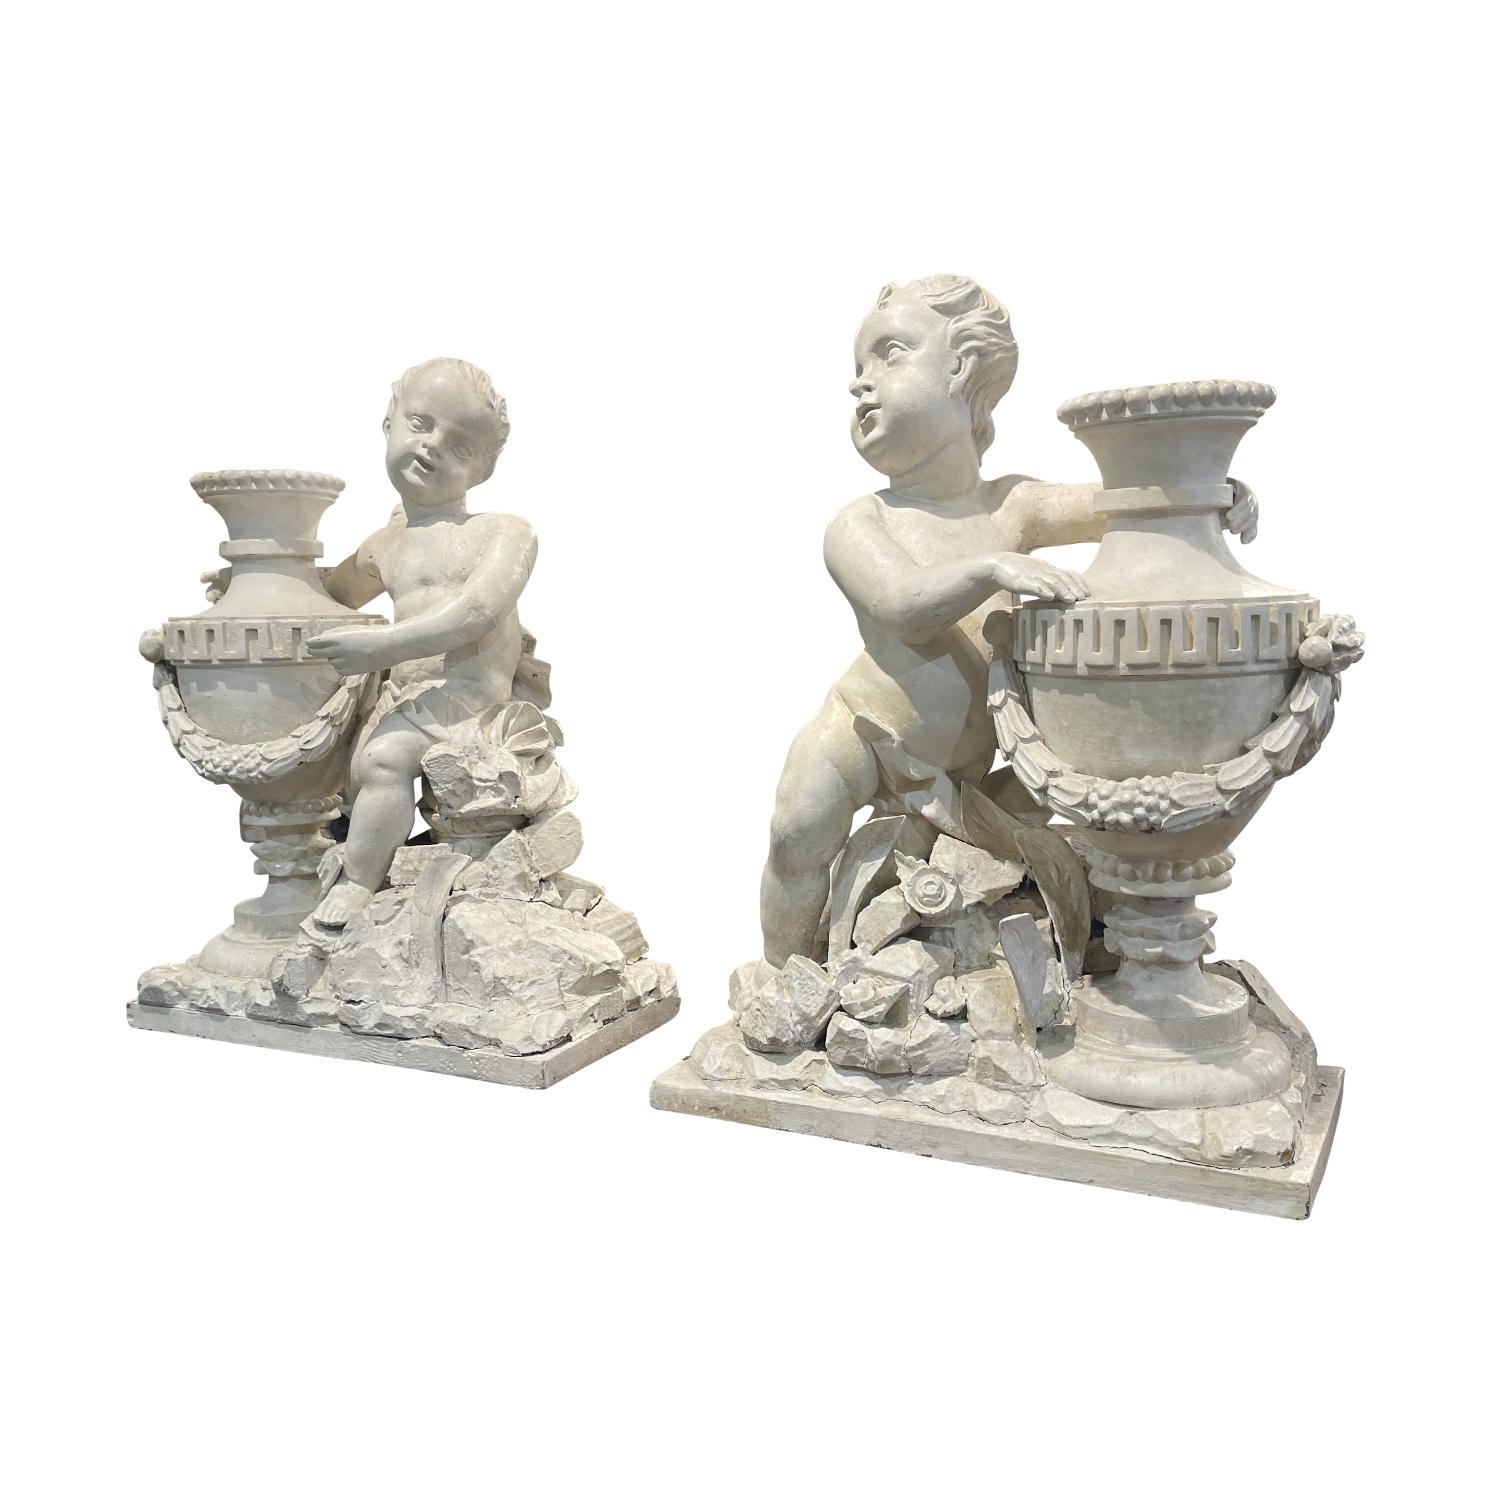 Ein weiß-graues Paar Putten oder Putten-Statuetten aus der Louis XVI-Epoche. Handgeschnitzt und patiniert in Nussbaum im antiken Originalzustand. Dieses Pariser Puttenpaar steht sich gegenüber und ist elegant um die Hüften drapiert. Sie werden auf